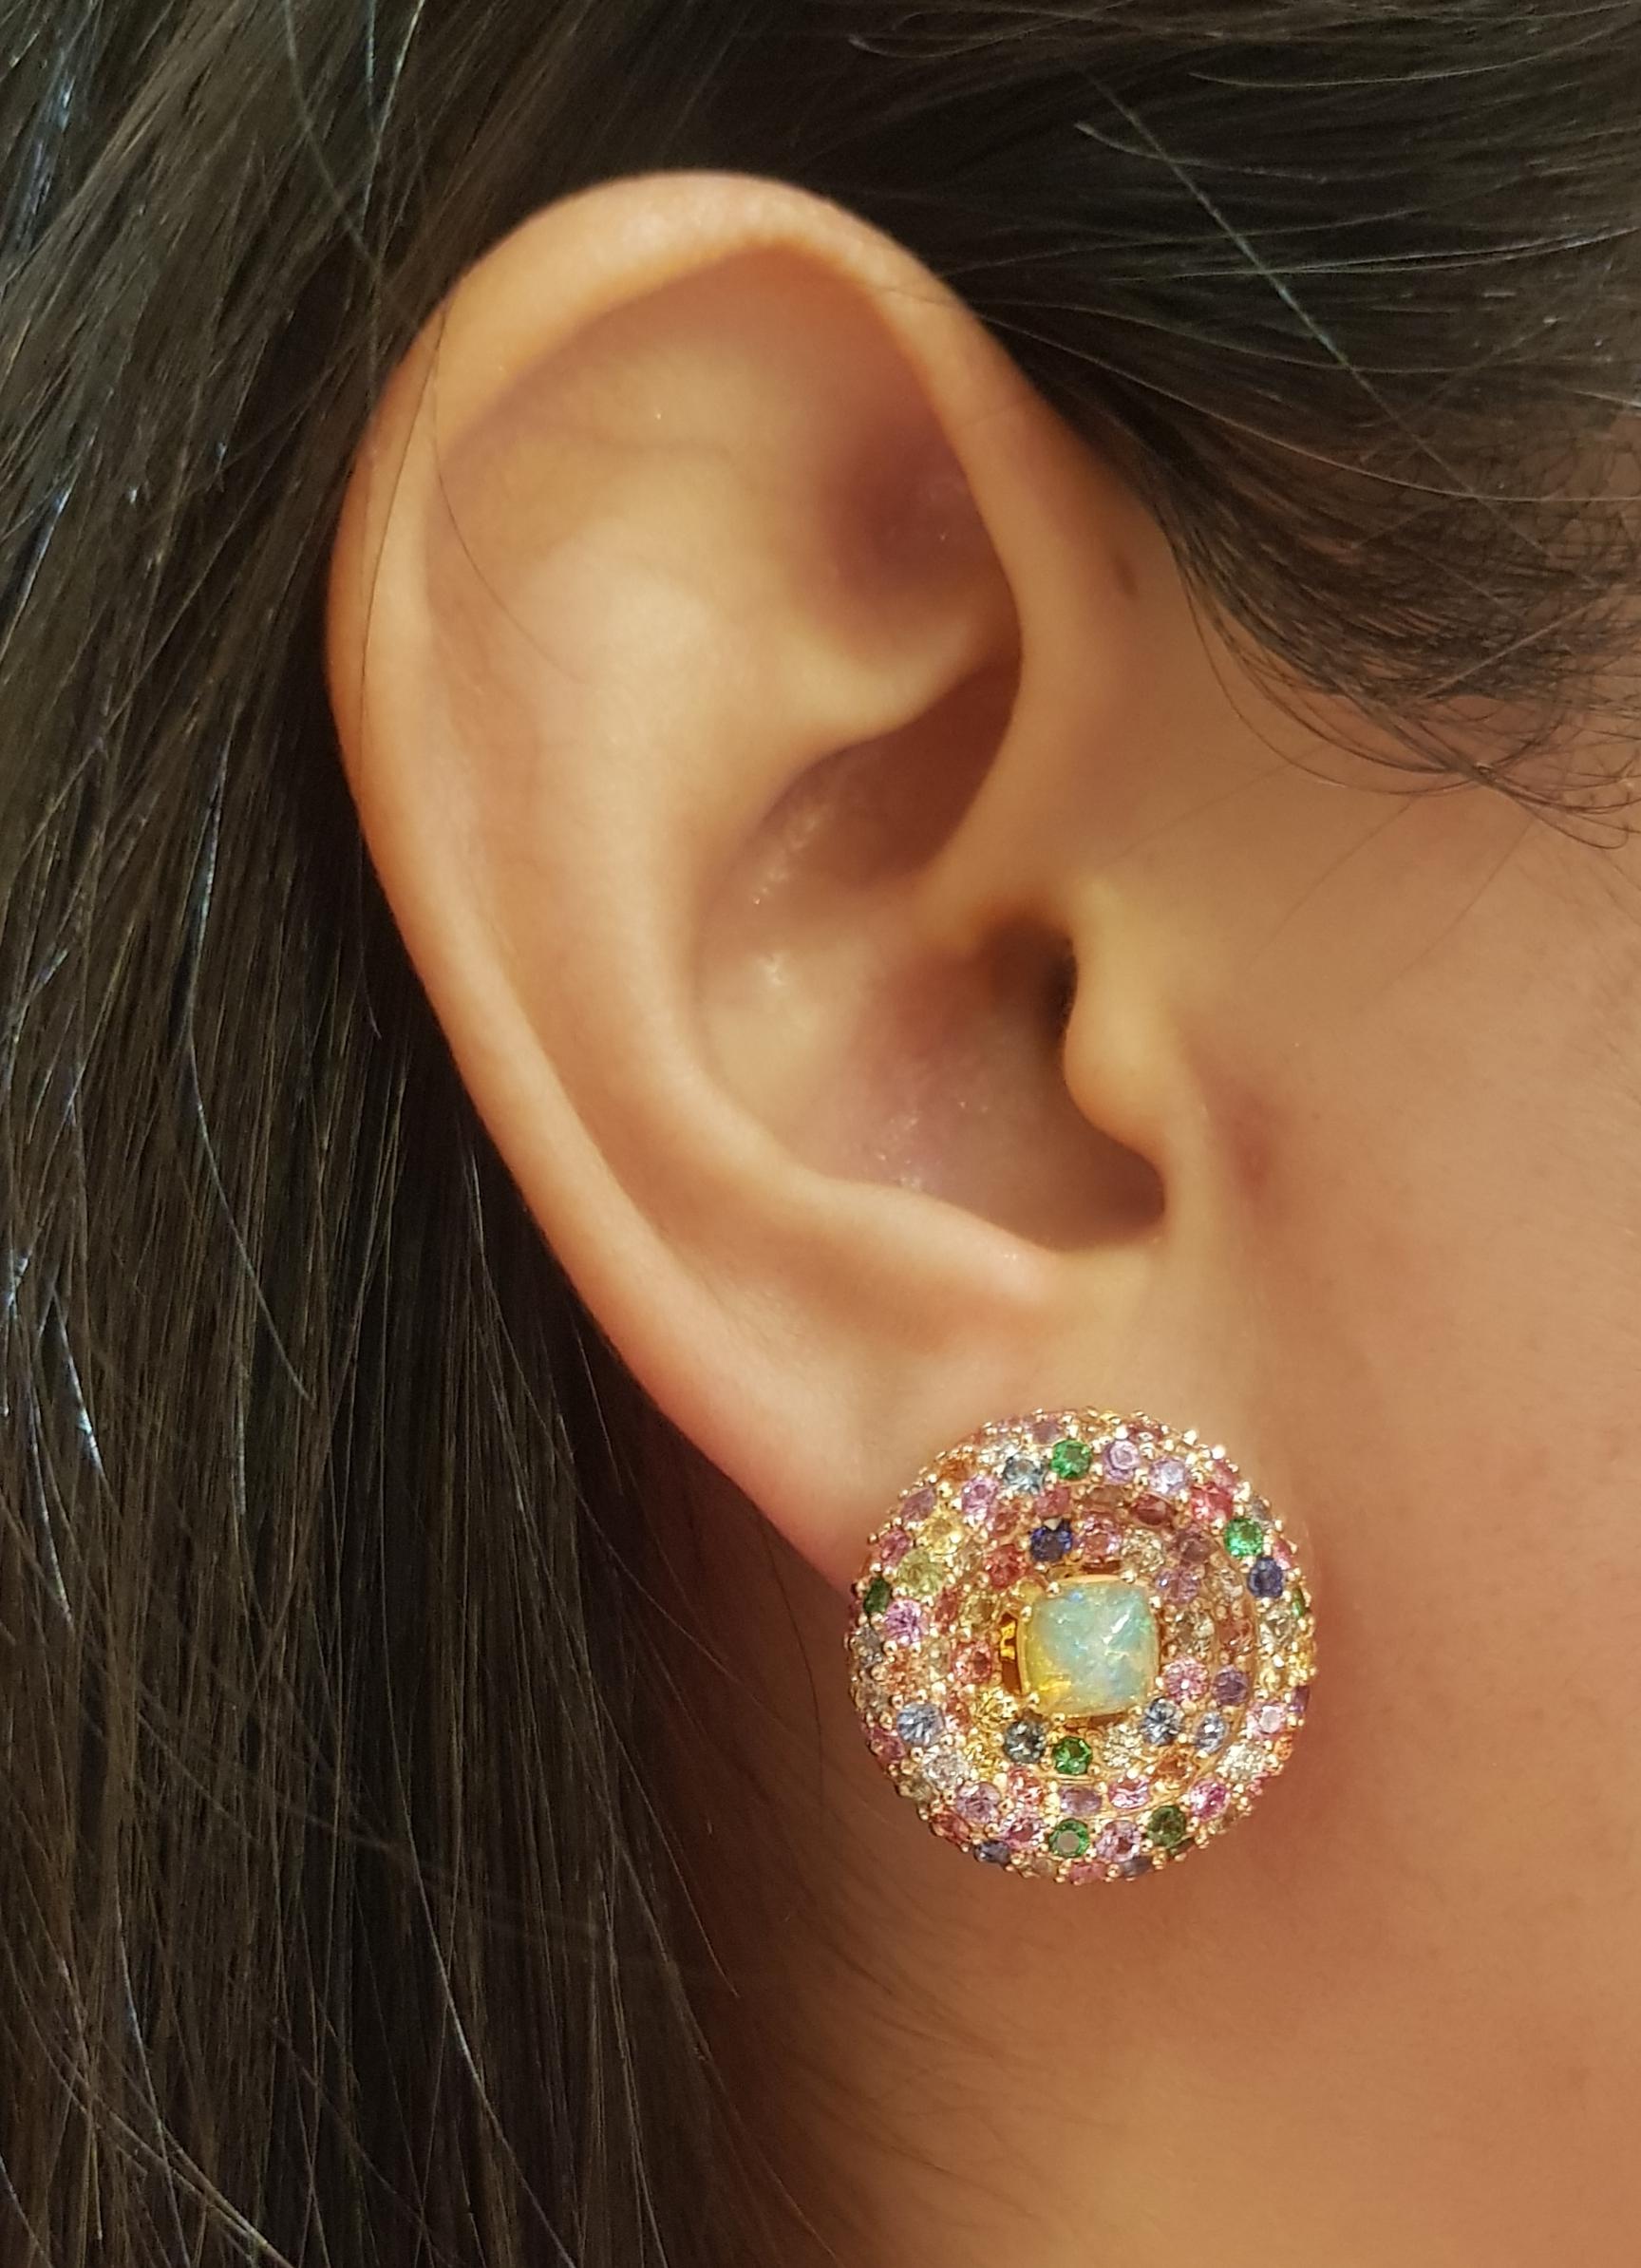 Opal 1,59 Karat, regenbogenfarbener Saphir 10,04 Karat und Diamant 1,07 Karat Ohrring in 18K Rose Gold Fassung

Breite: 2,0 cm 
Länge: 2,0 cm
Gesamtgewicht: 19,58 Gramm

